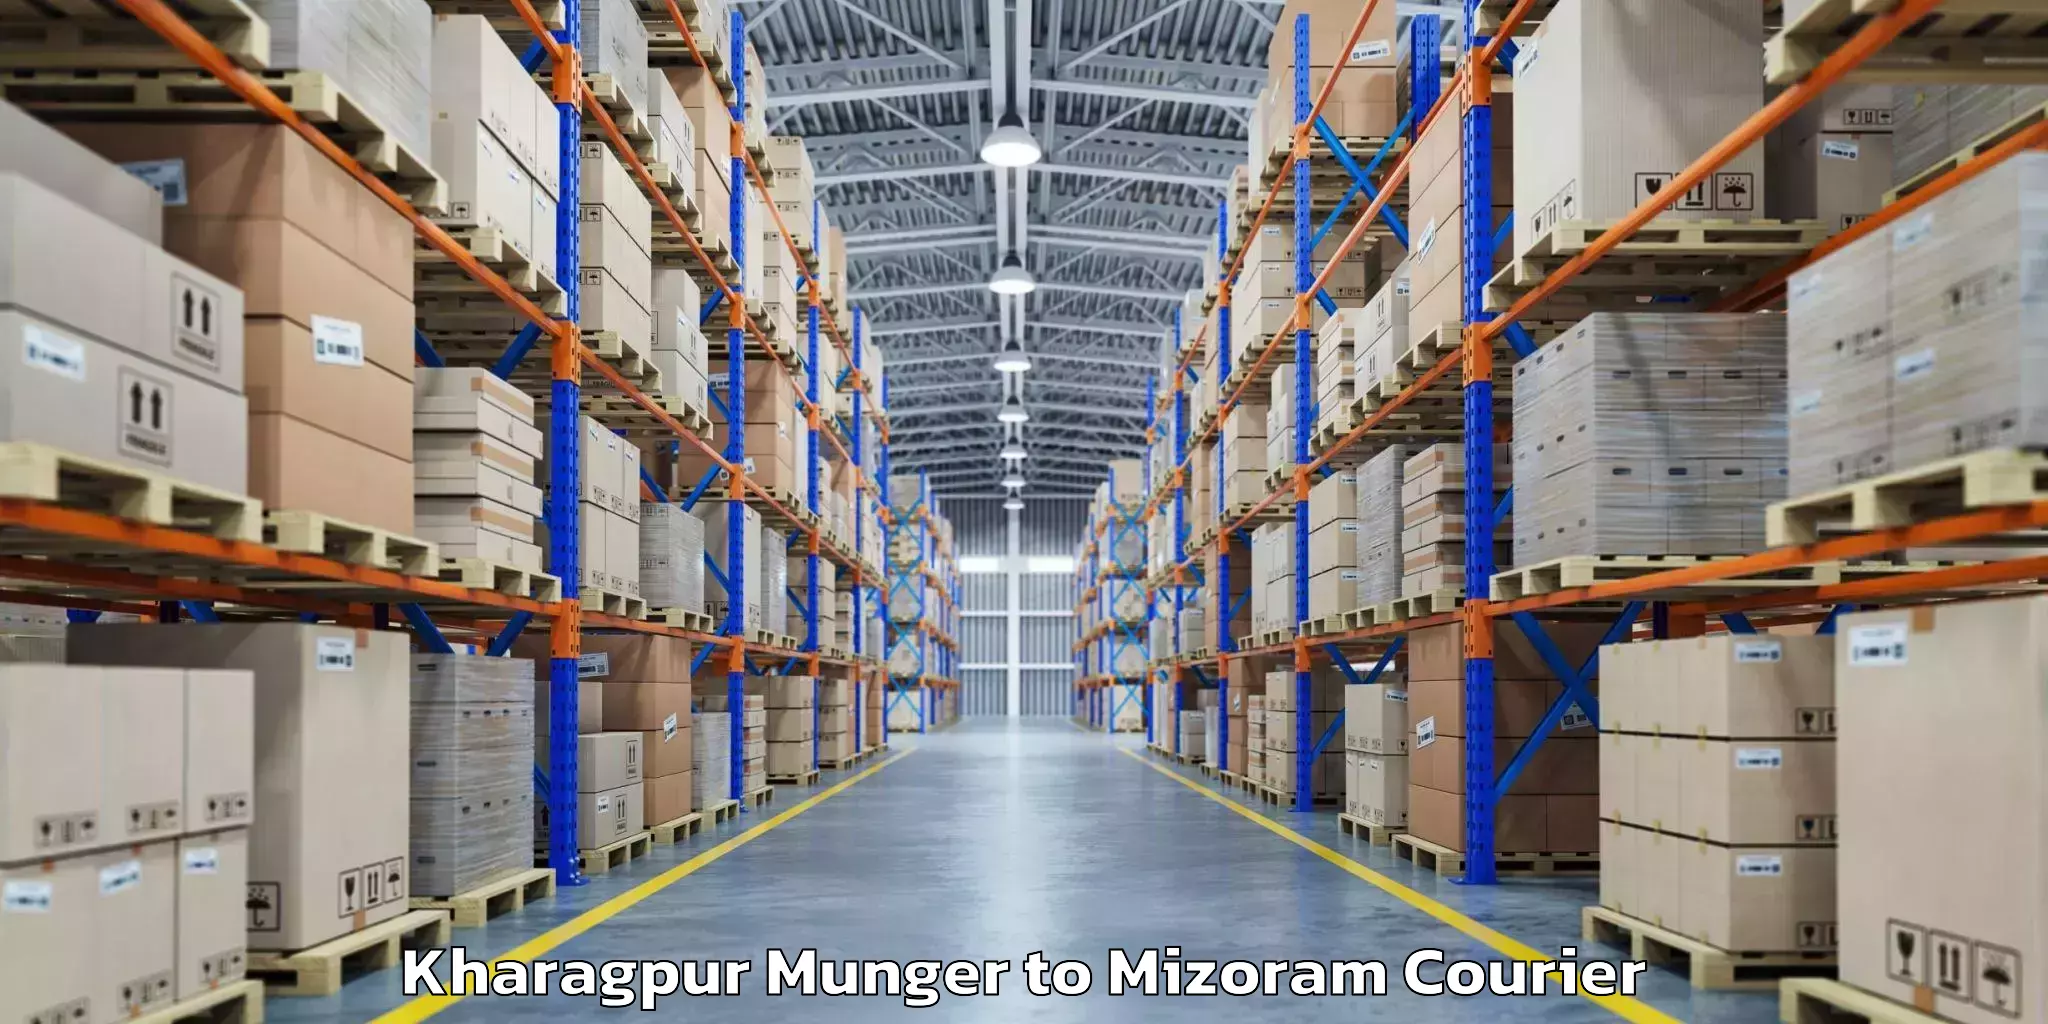 Baggage transport estimate Kharagpur Munger to Thenzawl